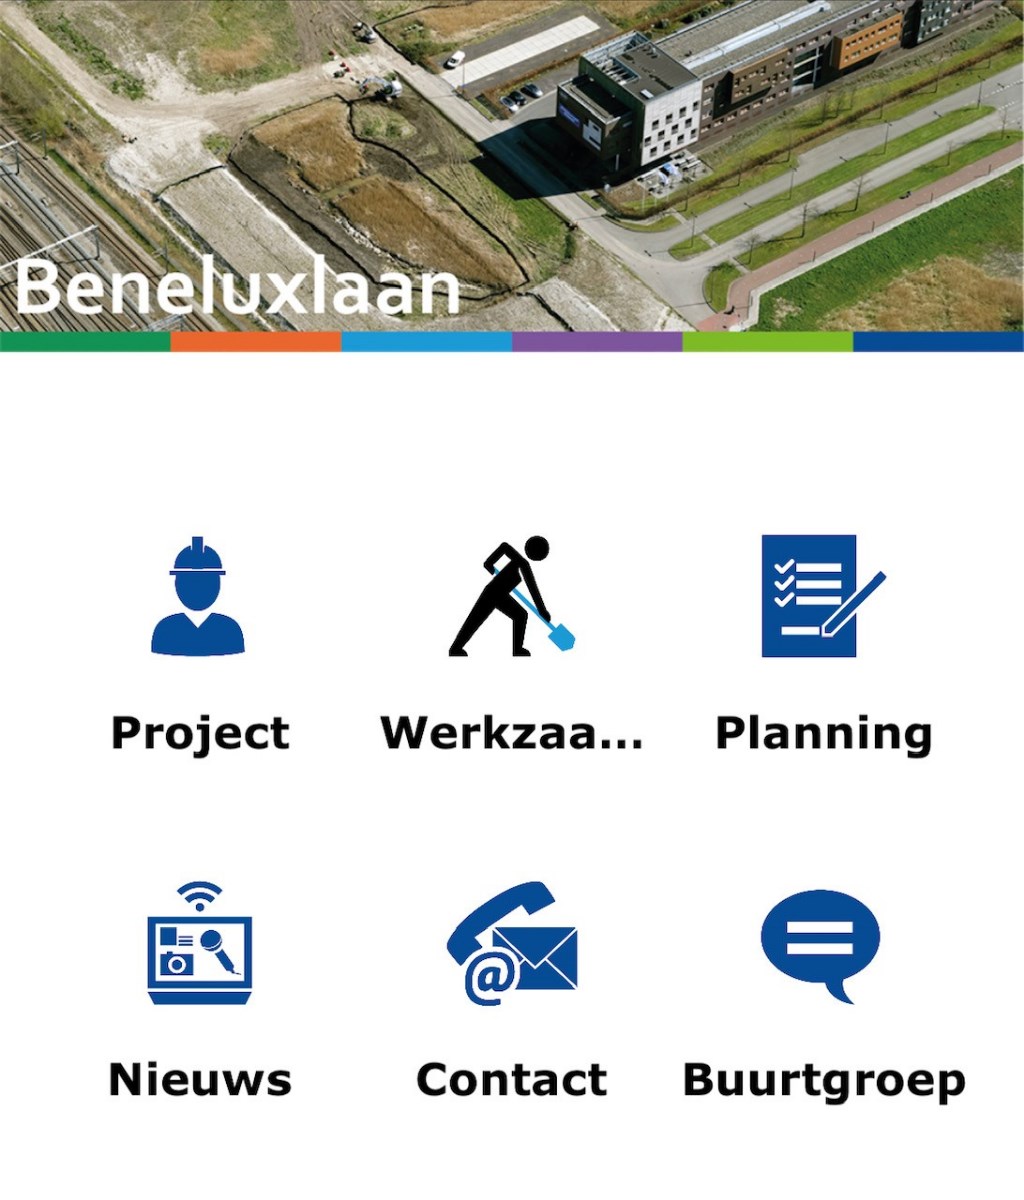 Bericht Download nu de Beneluxlaan App! bekijken